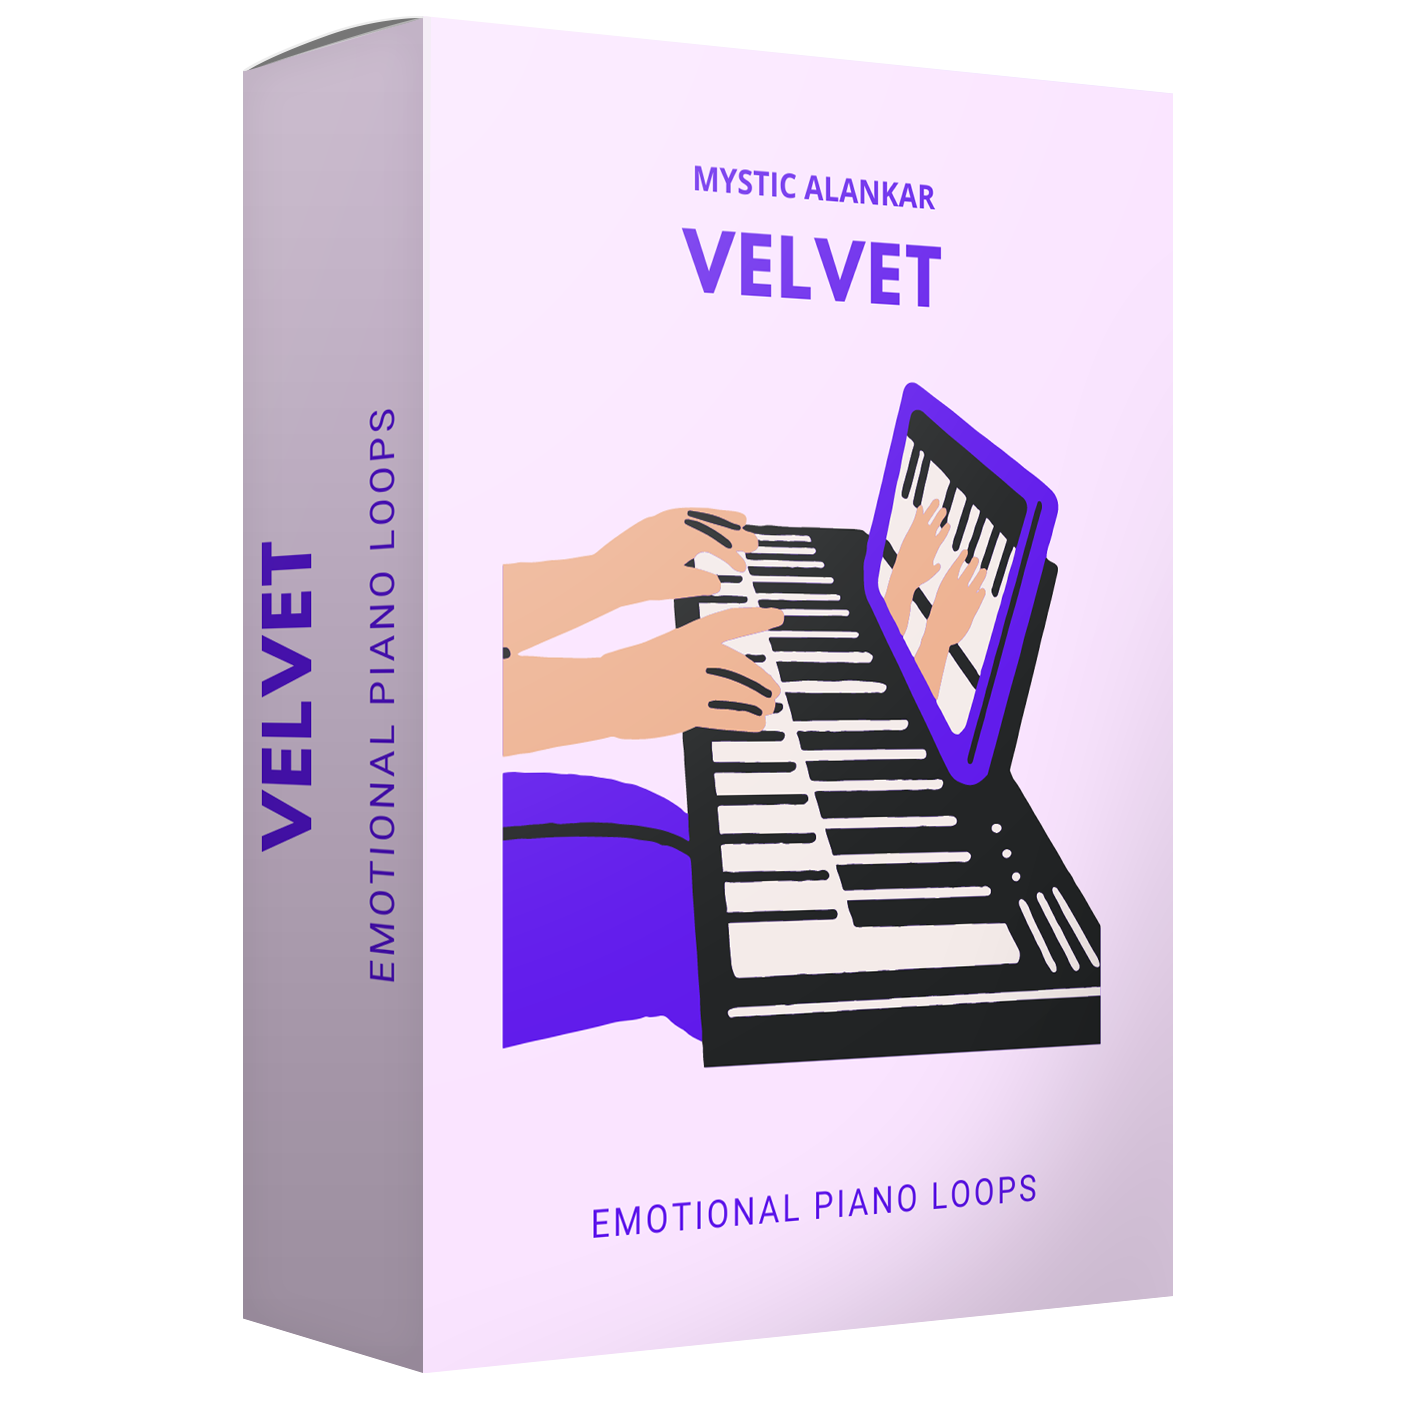 Velvet - Emotional Piano Loops